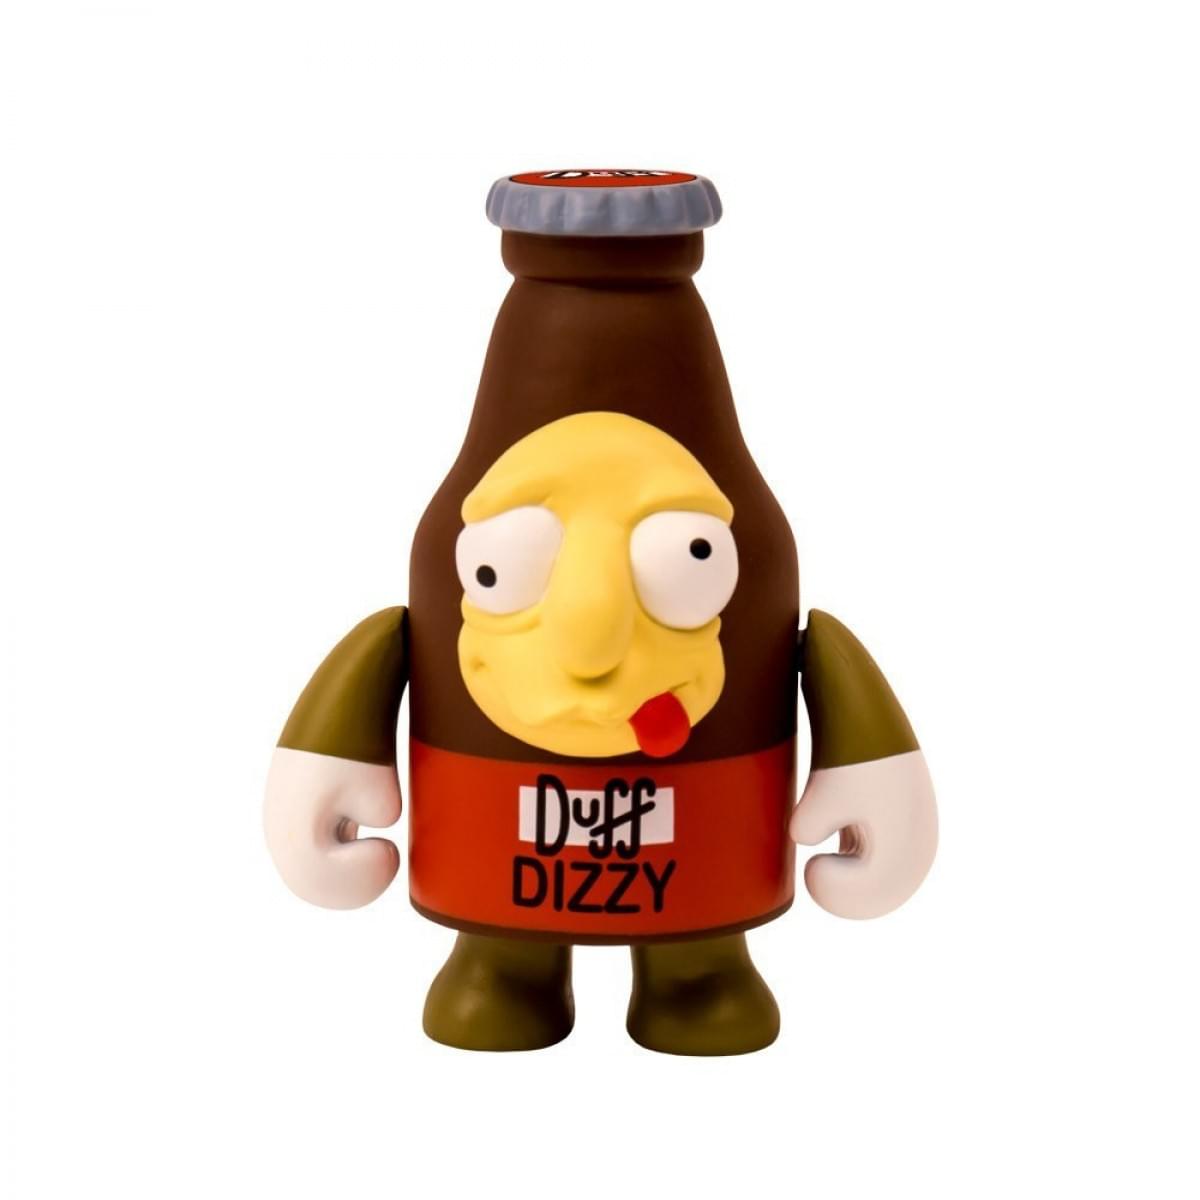 The Simpsons: 3" Dizzy Duff Beer Vinyl Figure by Kidrobot